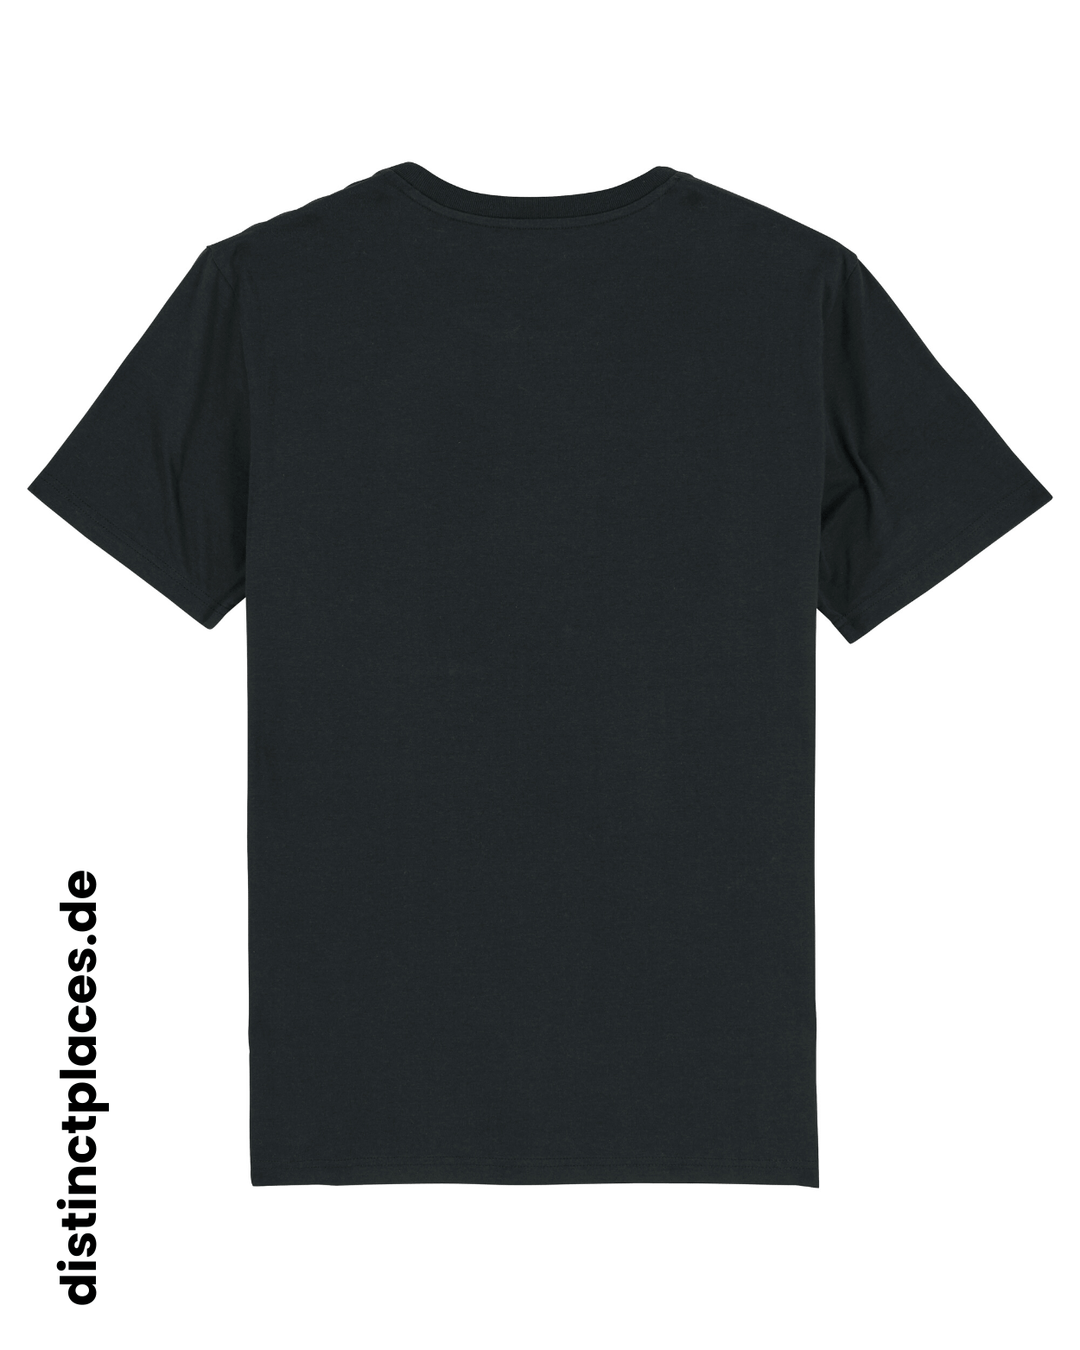 Schwarzes fairtrade, vegan und bio-baumwoll T-Shirt von hinten mit einem minimalistischem weißen Logo, beziehungsweise Wappen und Schriftzug für Sachsen-Anhalt